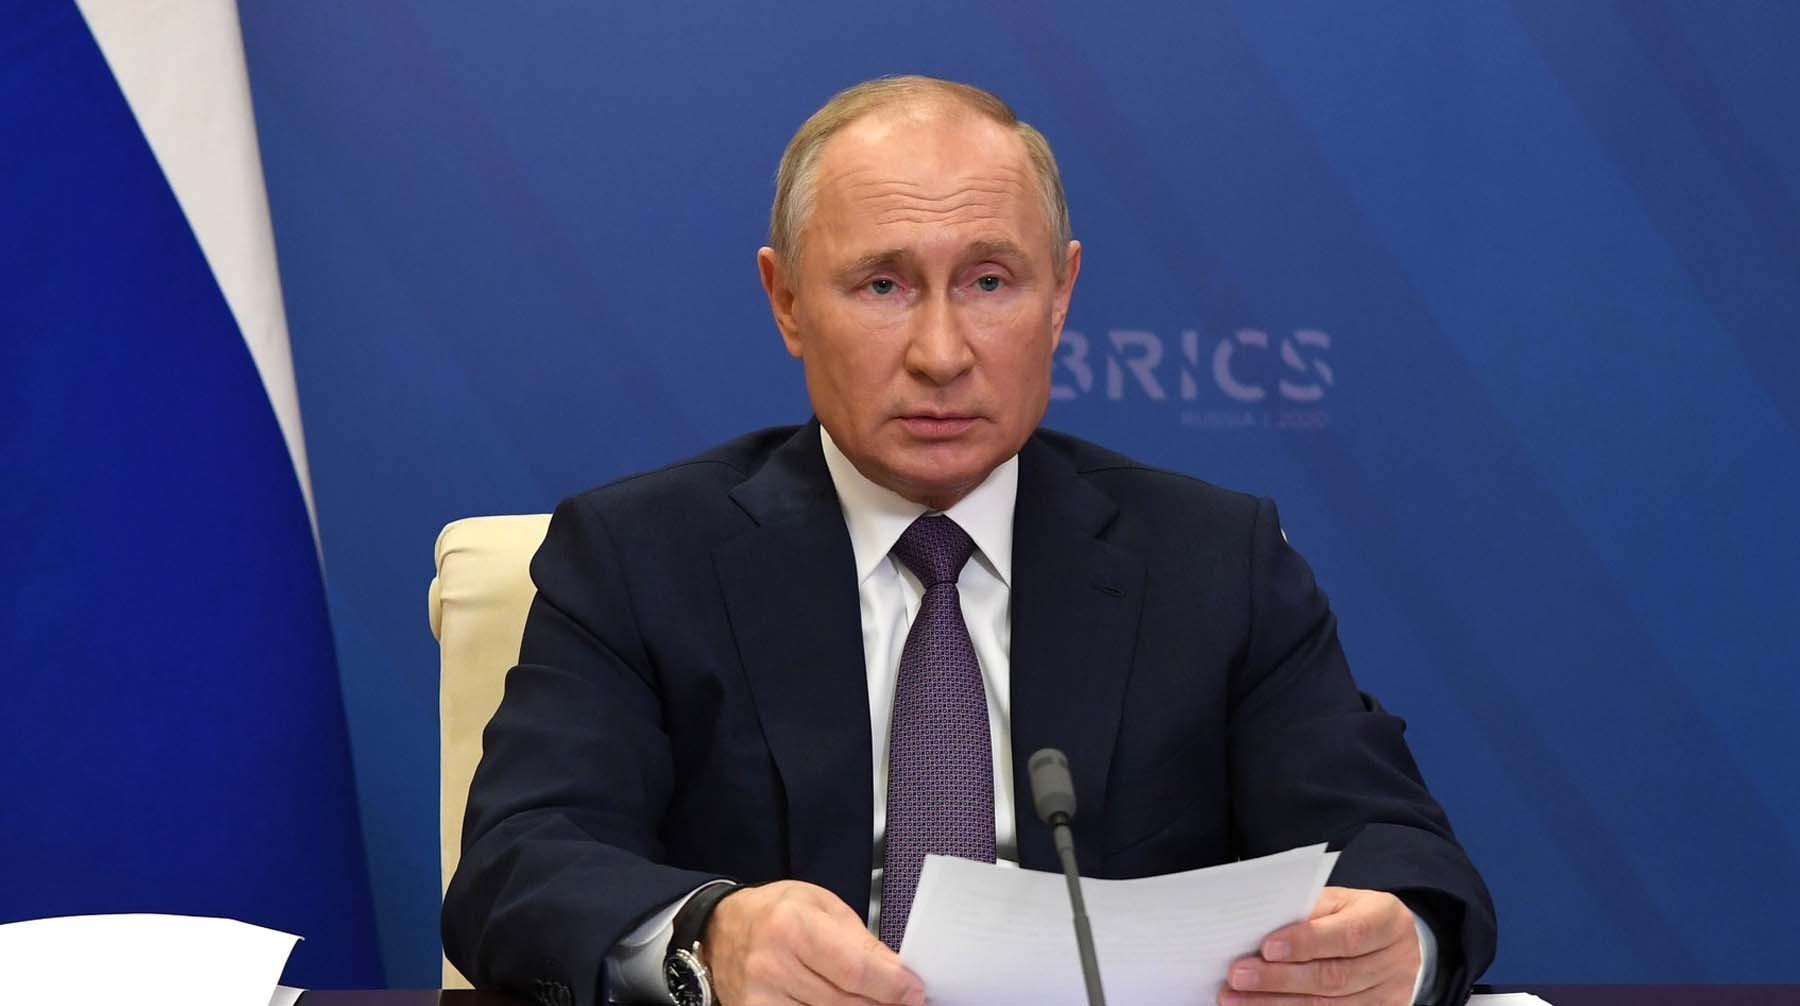 Dailystorm - Удаленка, Госсовет, верховенство Конституции: Путин подписал ряд законов